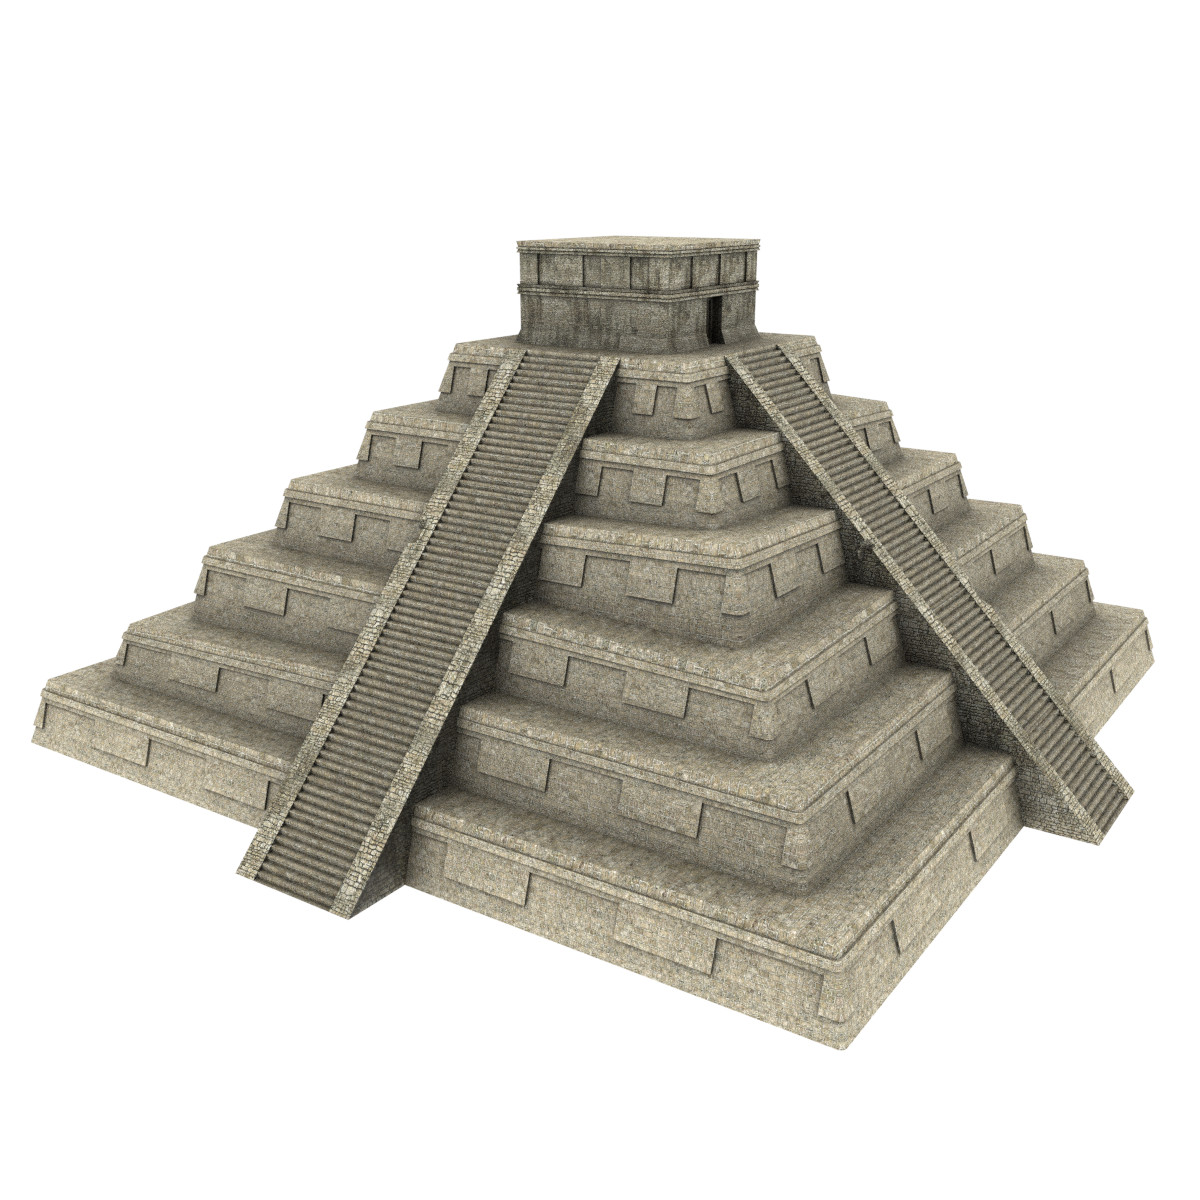 Mayan Pyramid Png - Mayan Pyramid 3D Model, Transparent background PNG HD thumbnail